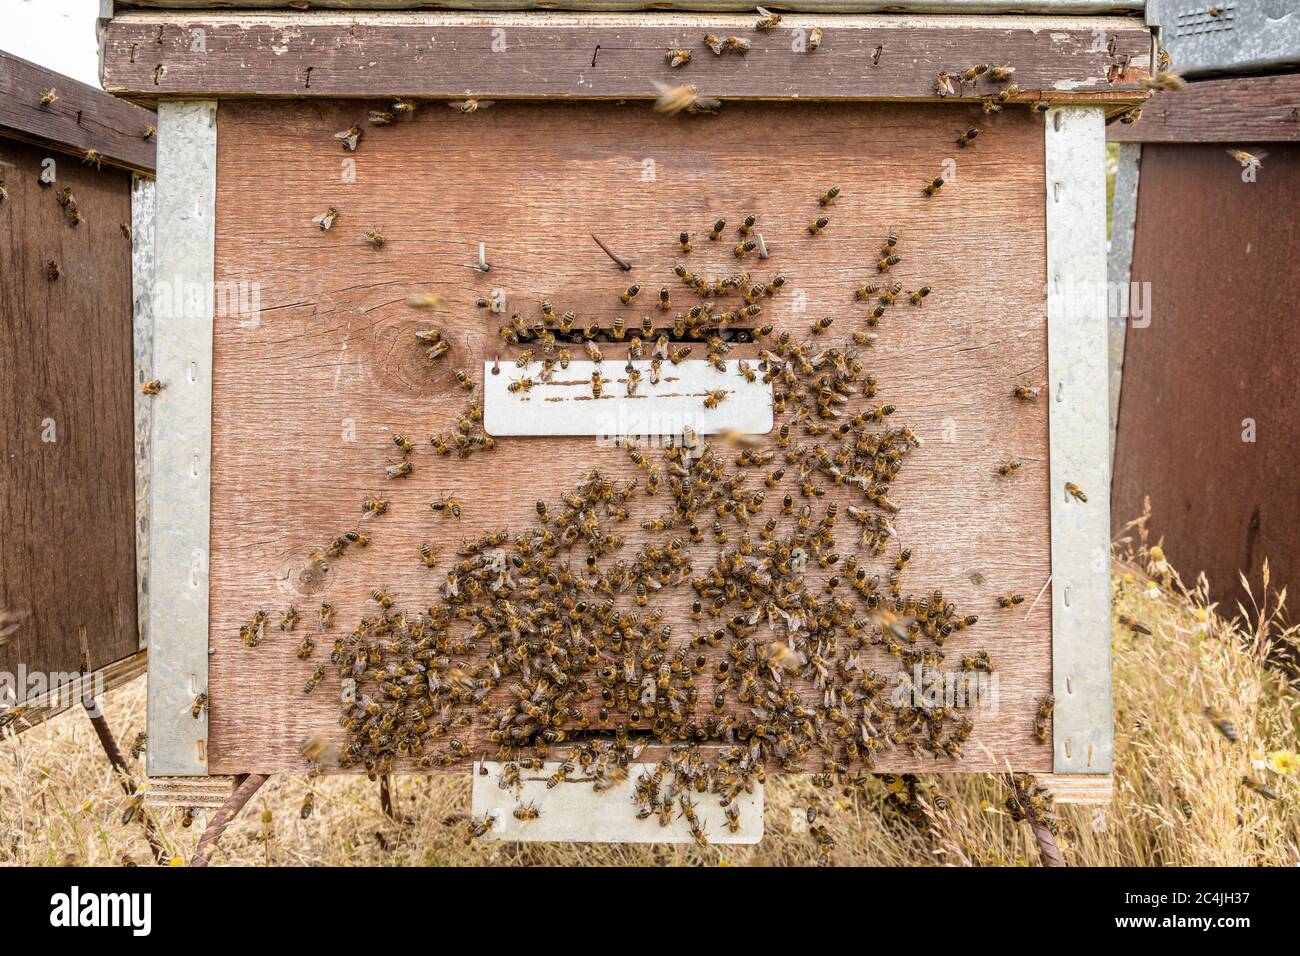 Bienen fliegen vor dem hive Eintrag Stockfoto